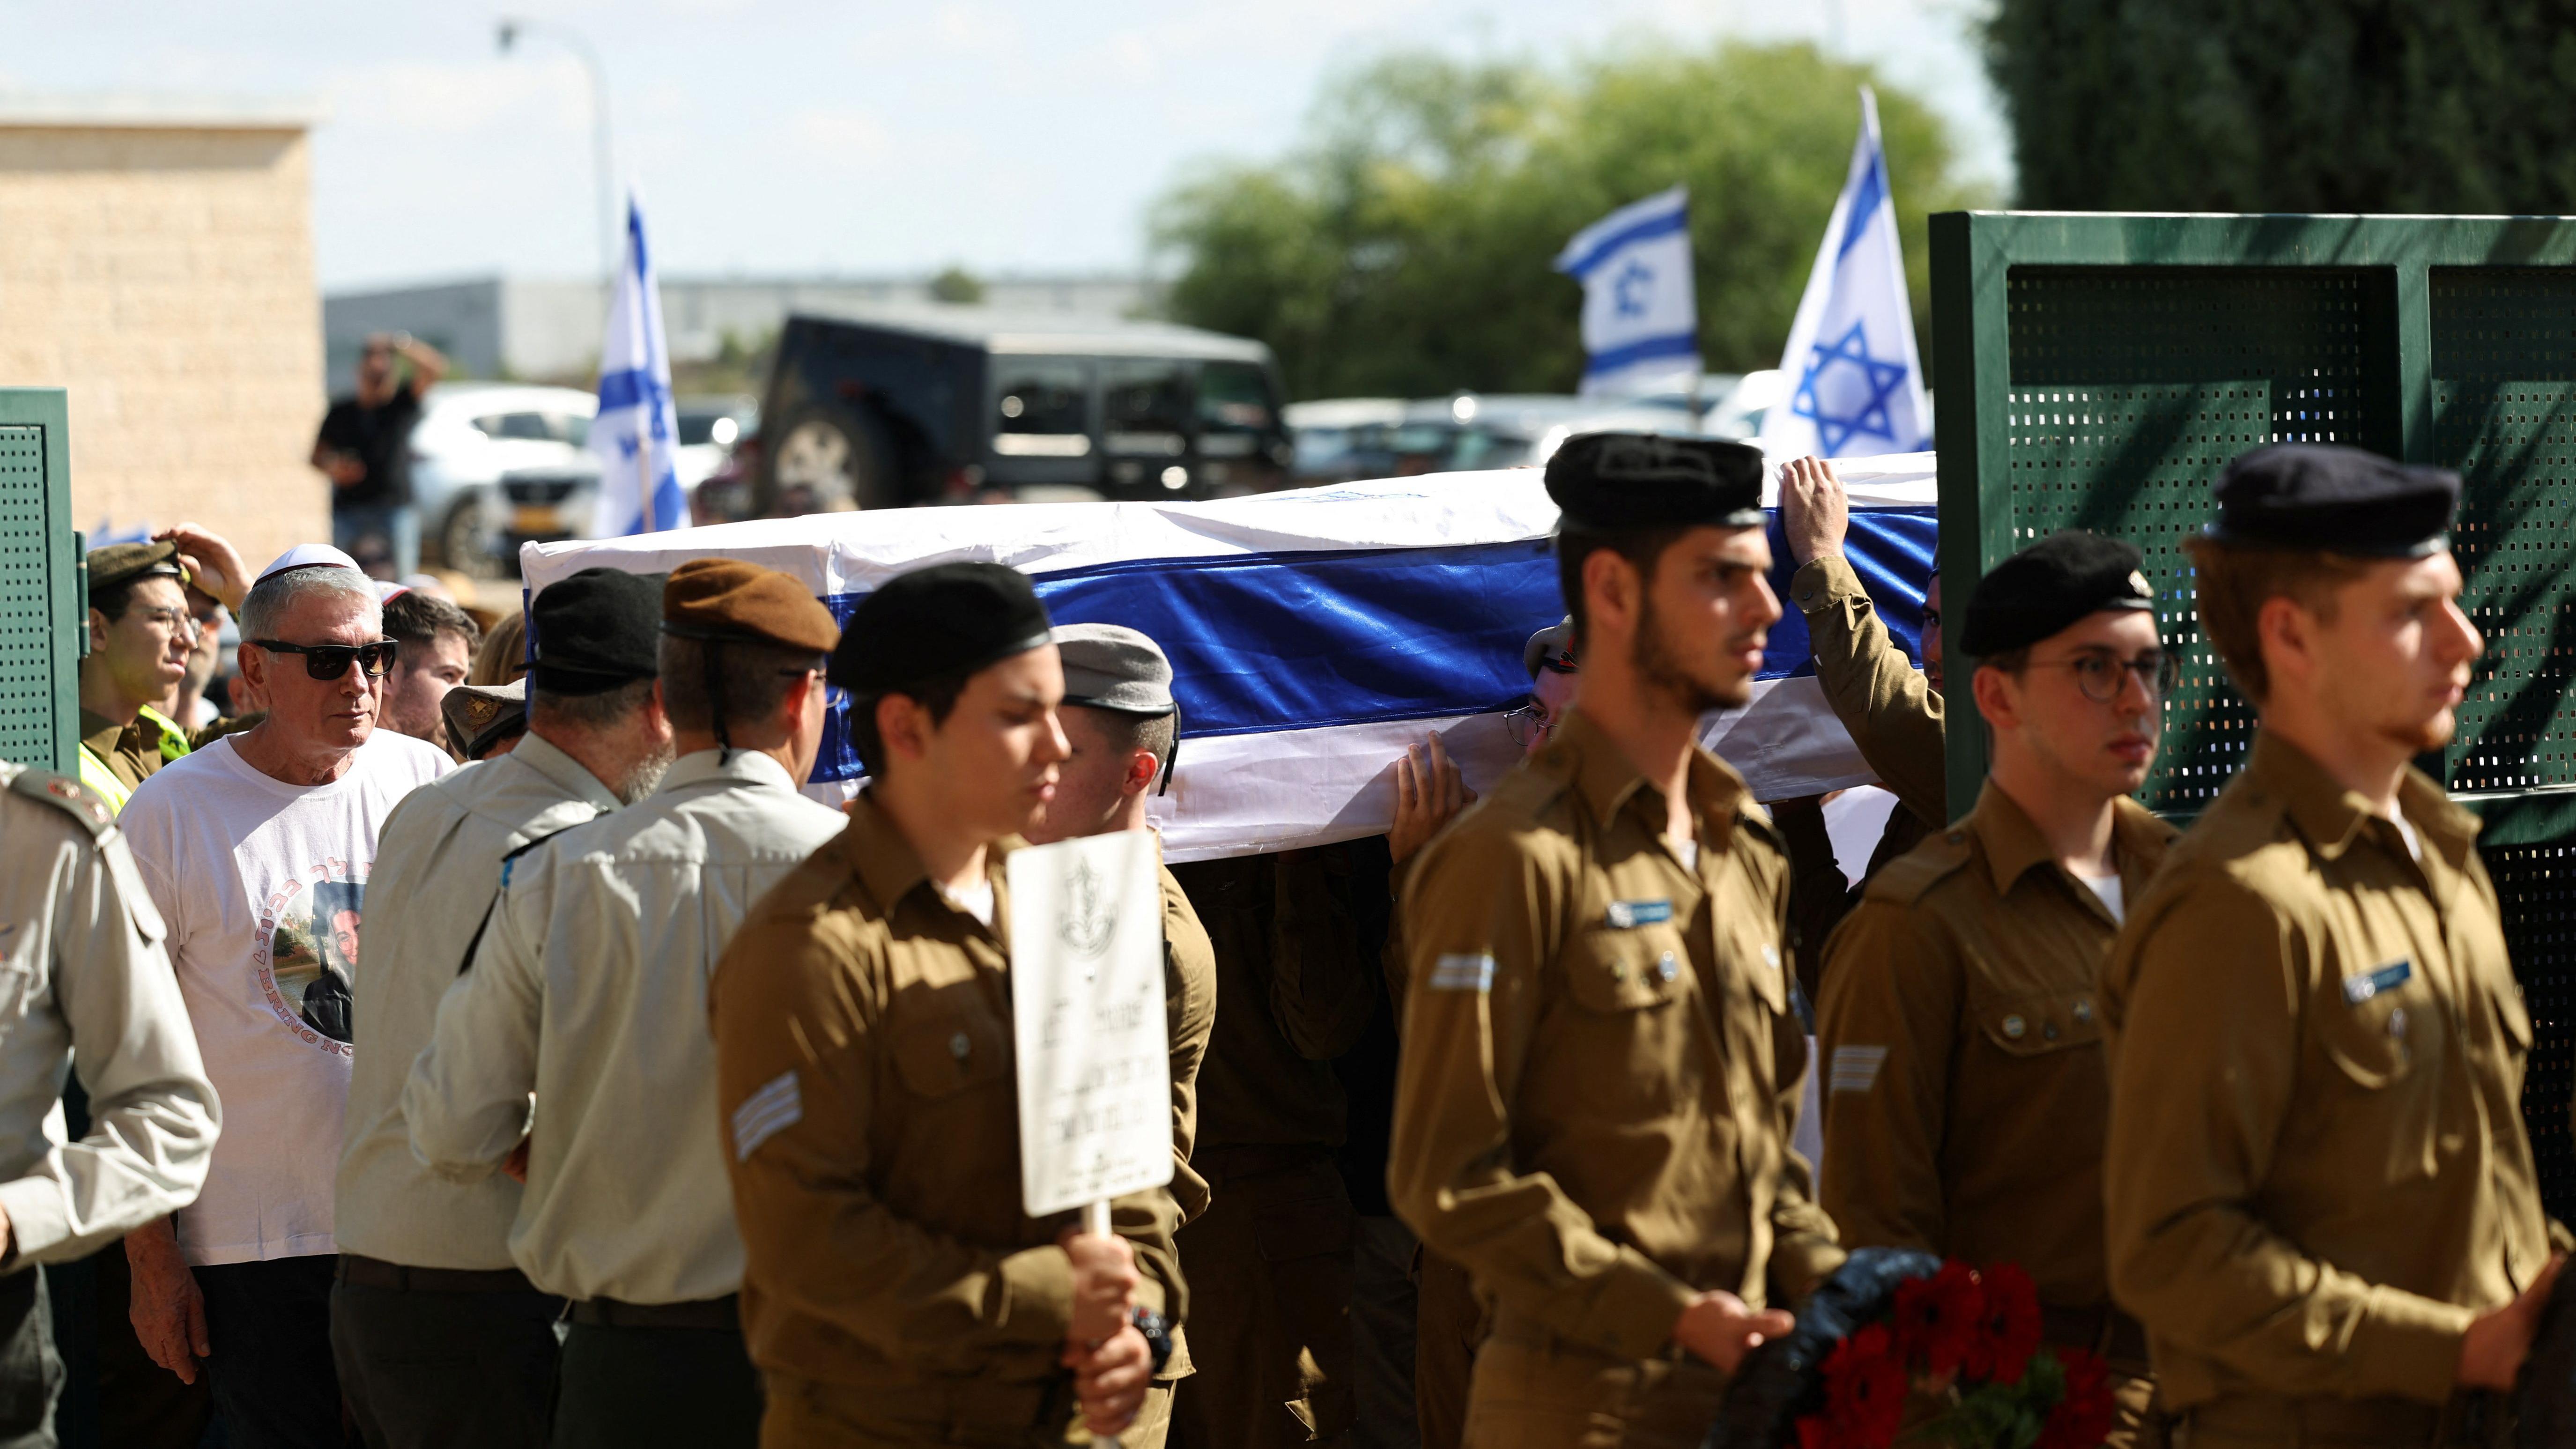 Membros das forças armadas israelenses durante o funeral da soldada israelense  Noa Marciano depois que seus restos mortais foram recuperados perto do Hospital Al Shifa durante a operação terrestre israelense em andamento em Gaza